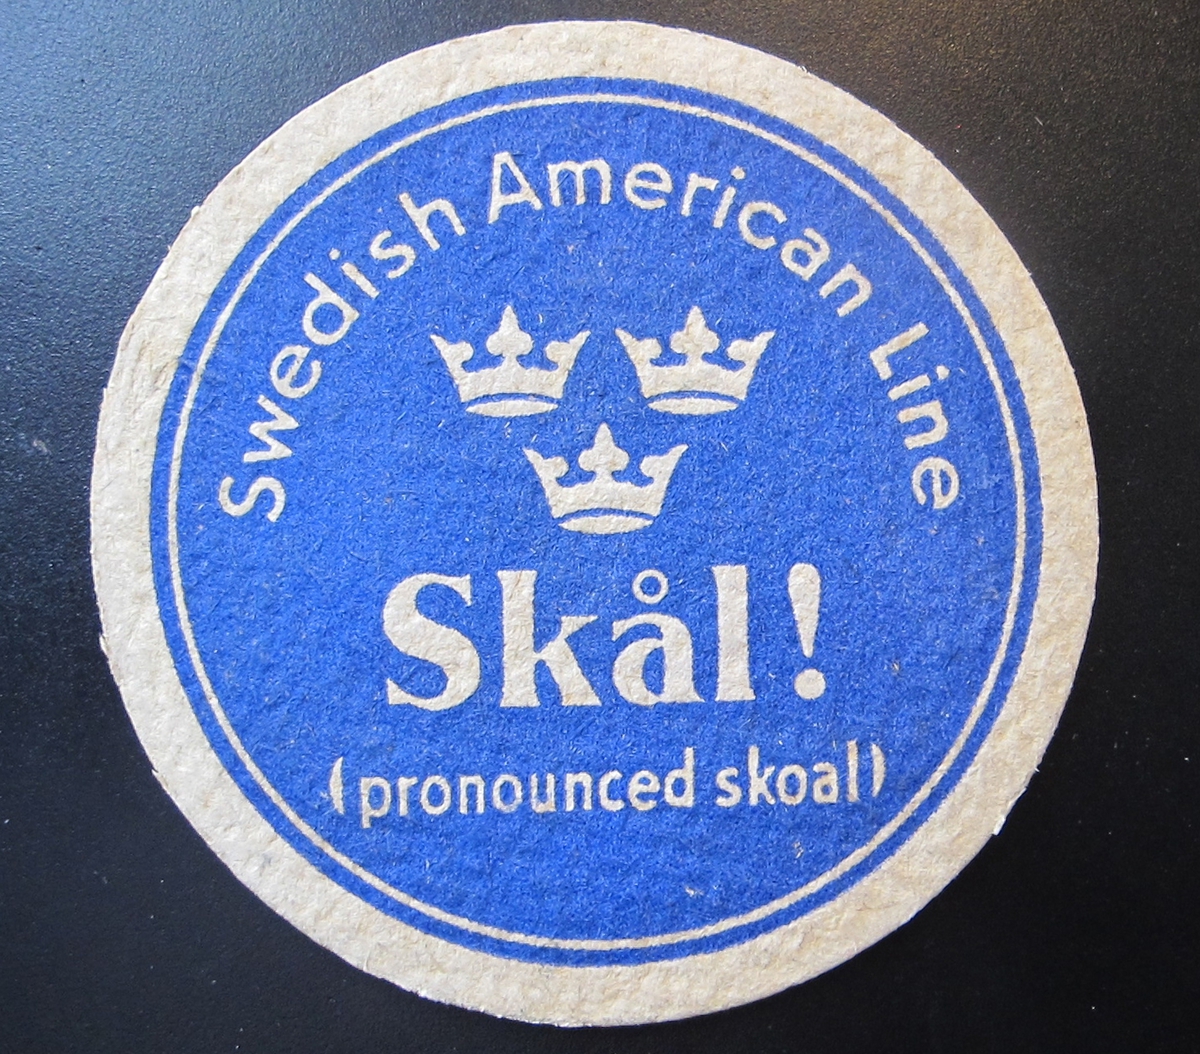 Runt glasunderlägg i beigevit papp med blått tryck, text i beigevitt: "Swedish American Line" "Skål!" "(pronounced skoal)" SAL:s emblem med tre kronor i mitten.